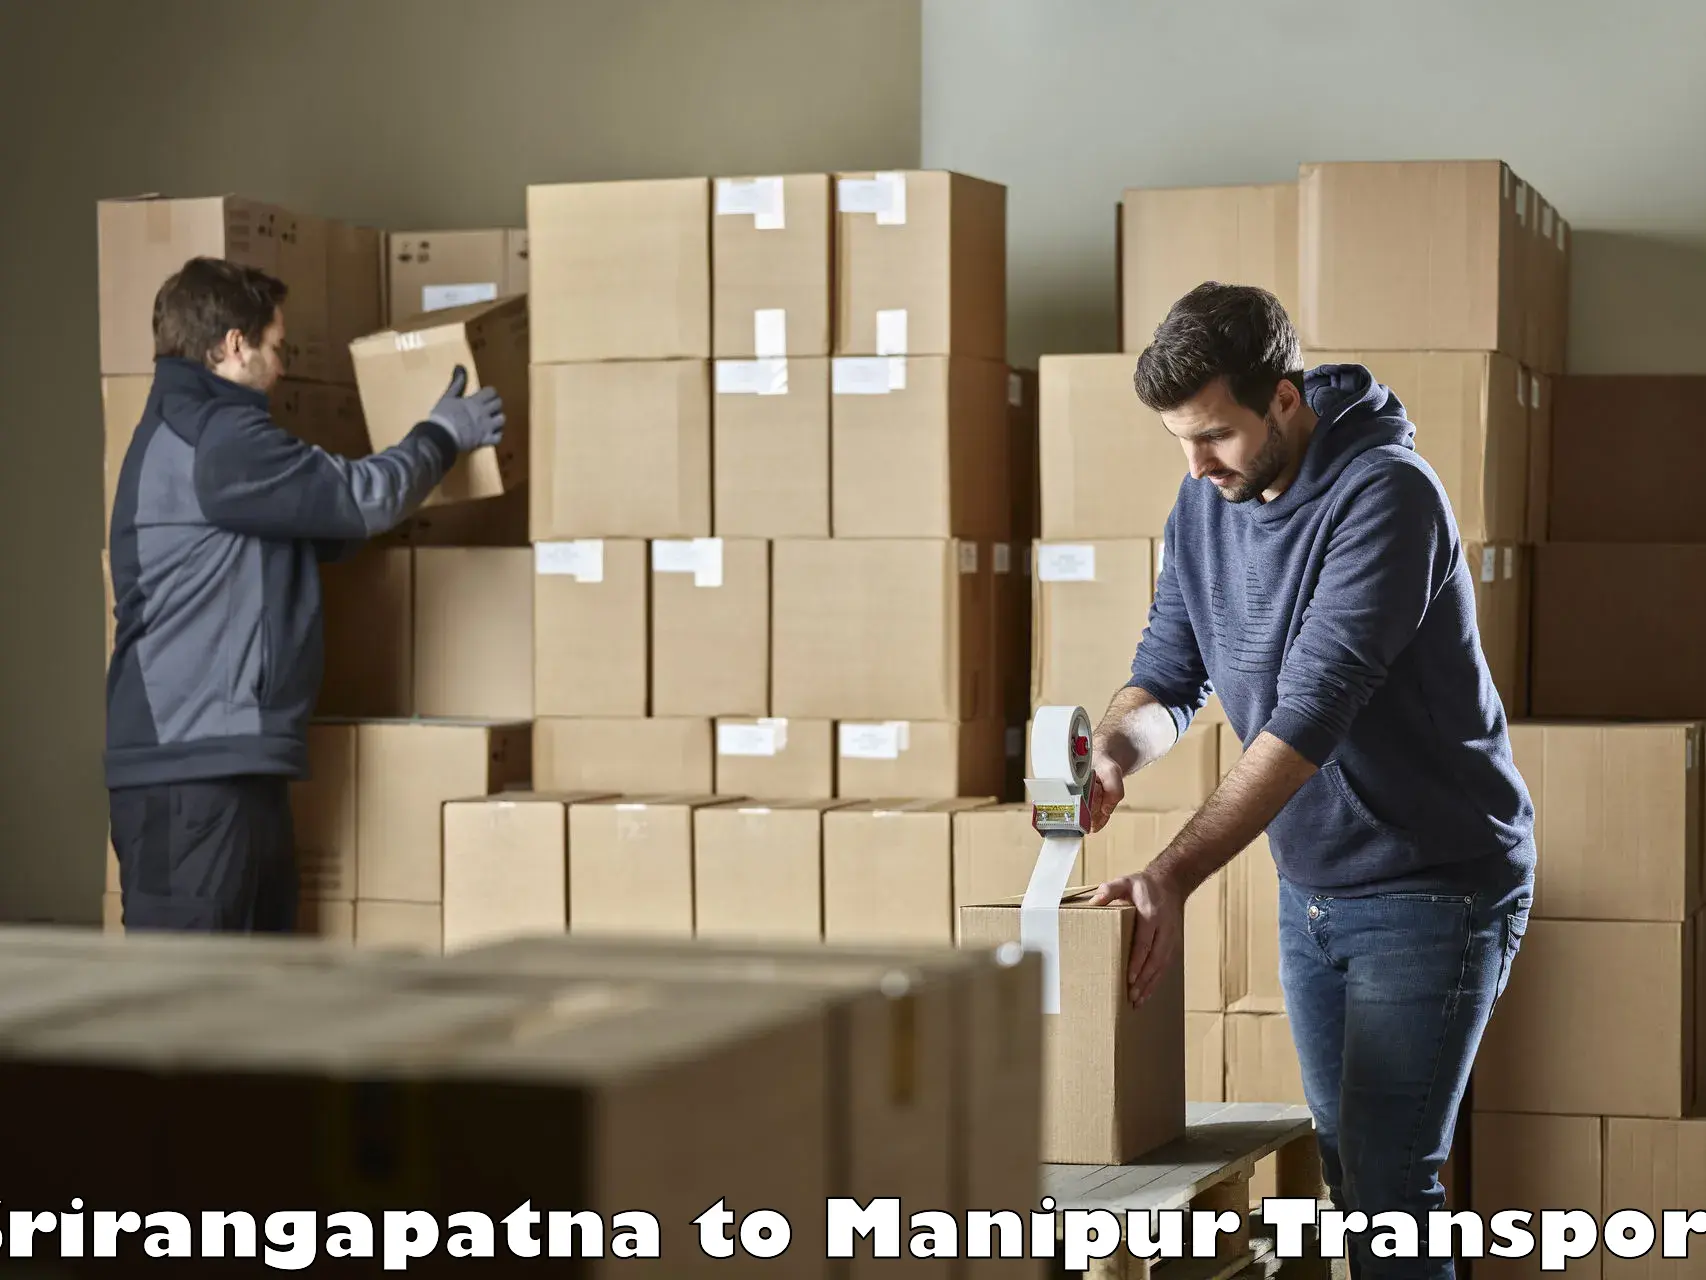 Road transport online services Srirangapatna to Churachandpur